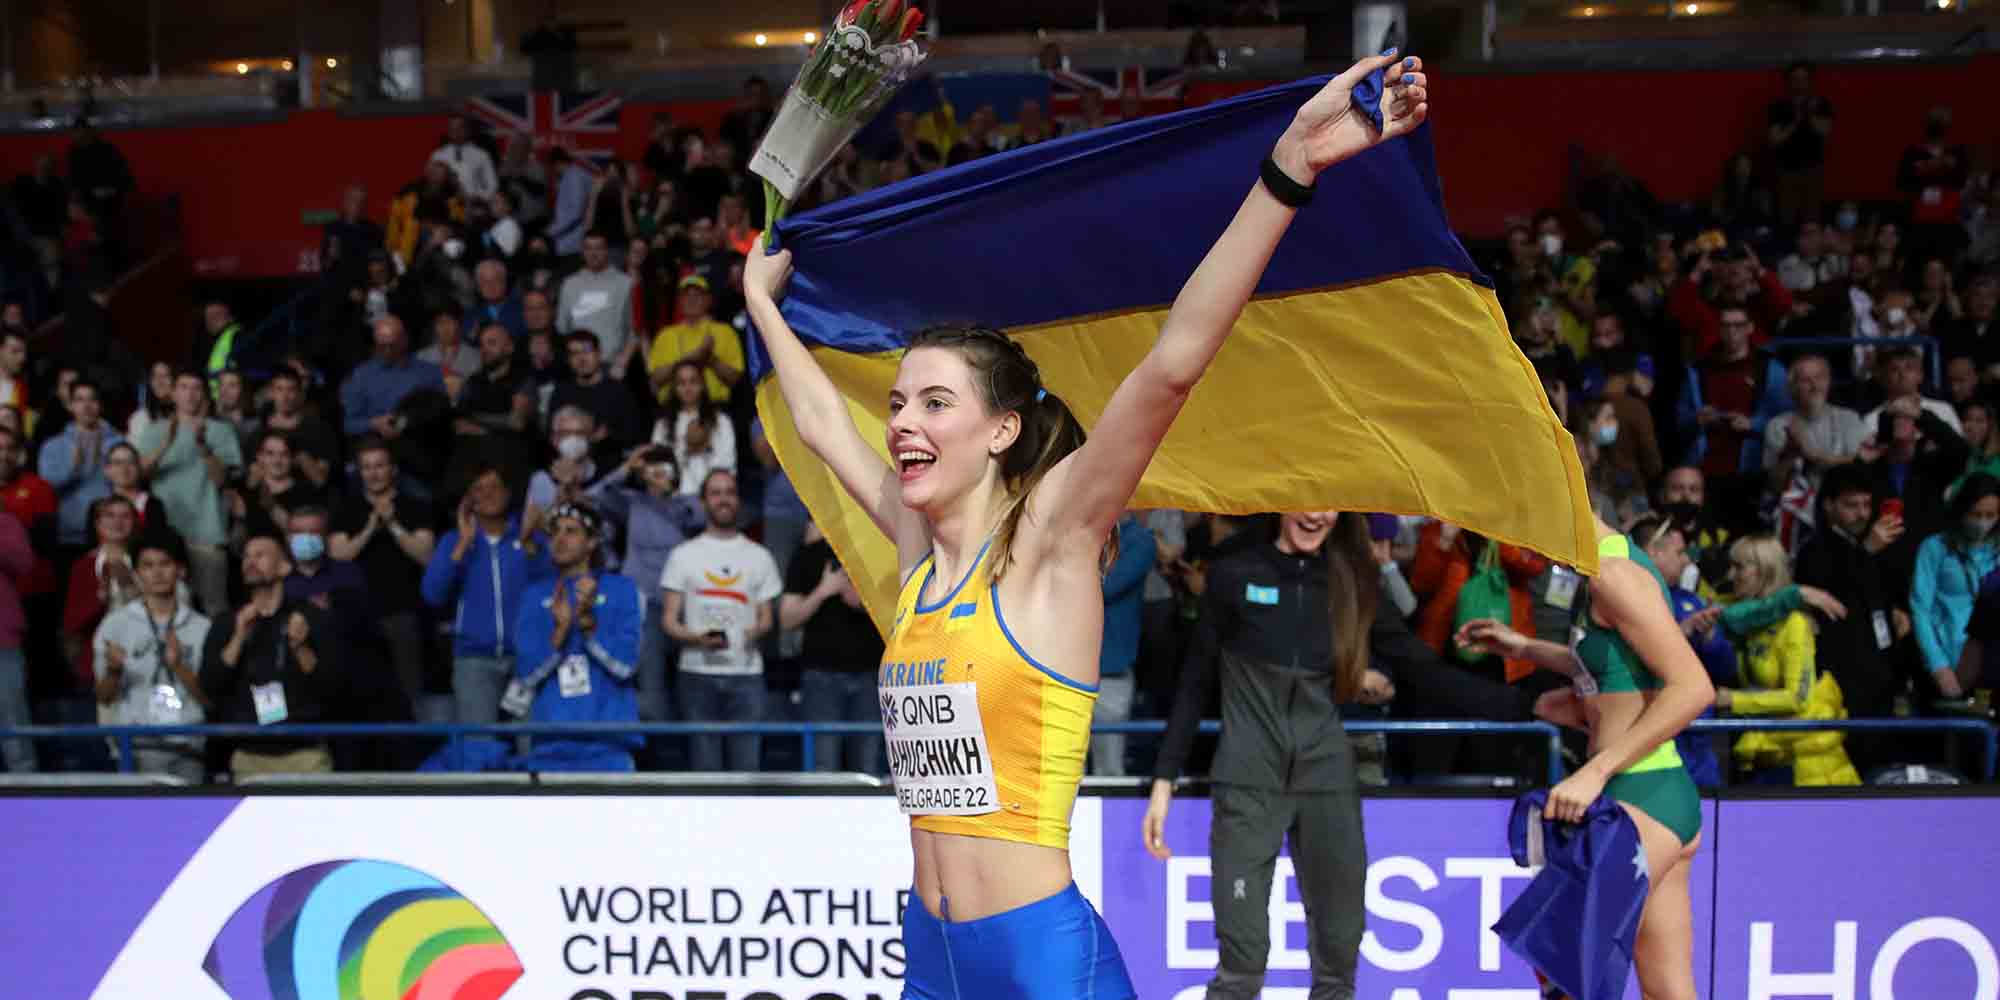 Η αθλήτρια Γιαροσλάβα Μάχουτσικ από την Ουκρανία πανηγυρίζει το χρυσό στο Παγκόσμιο